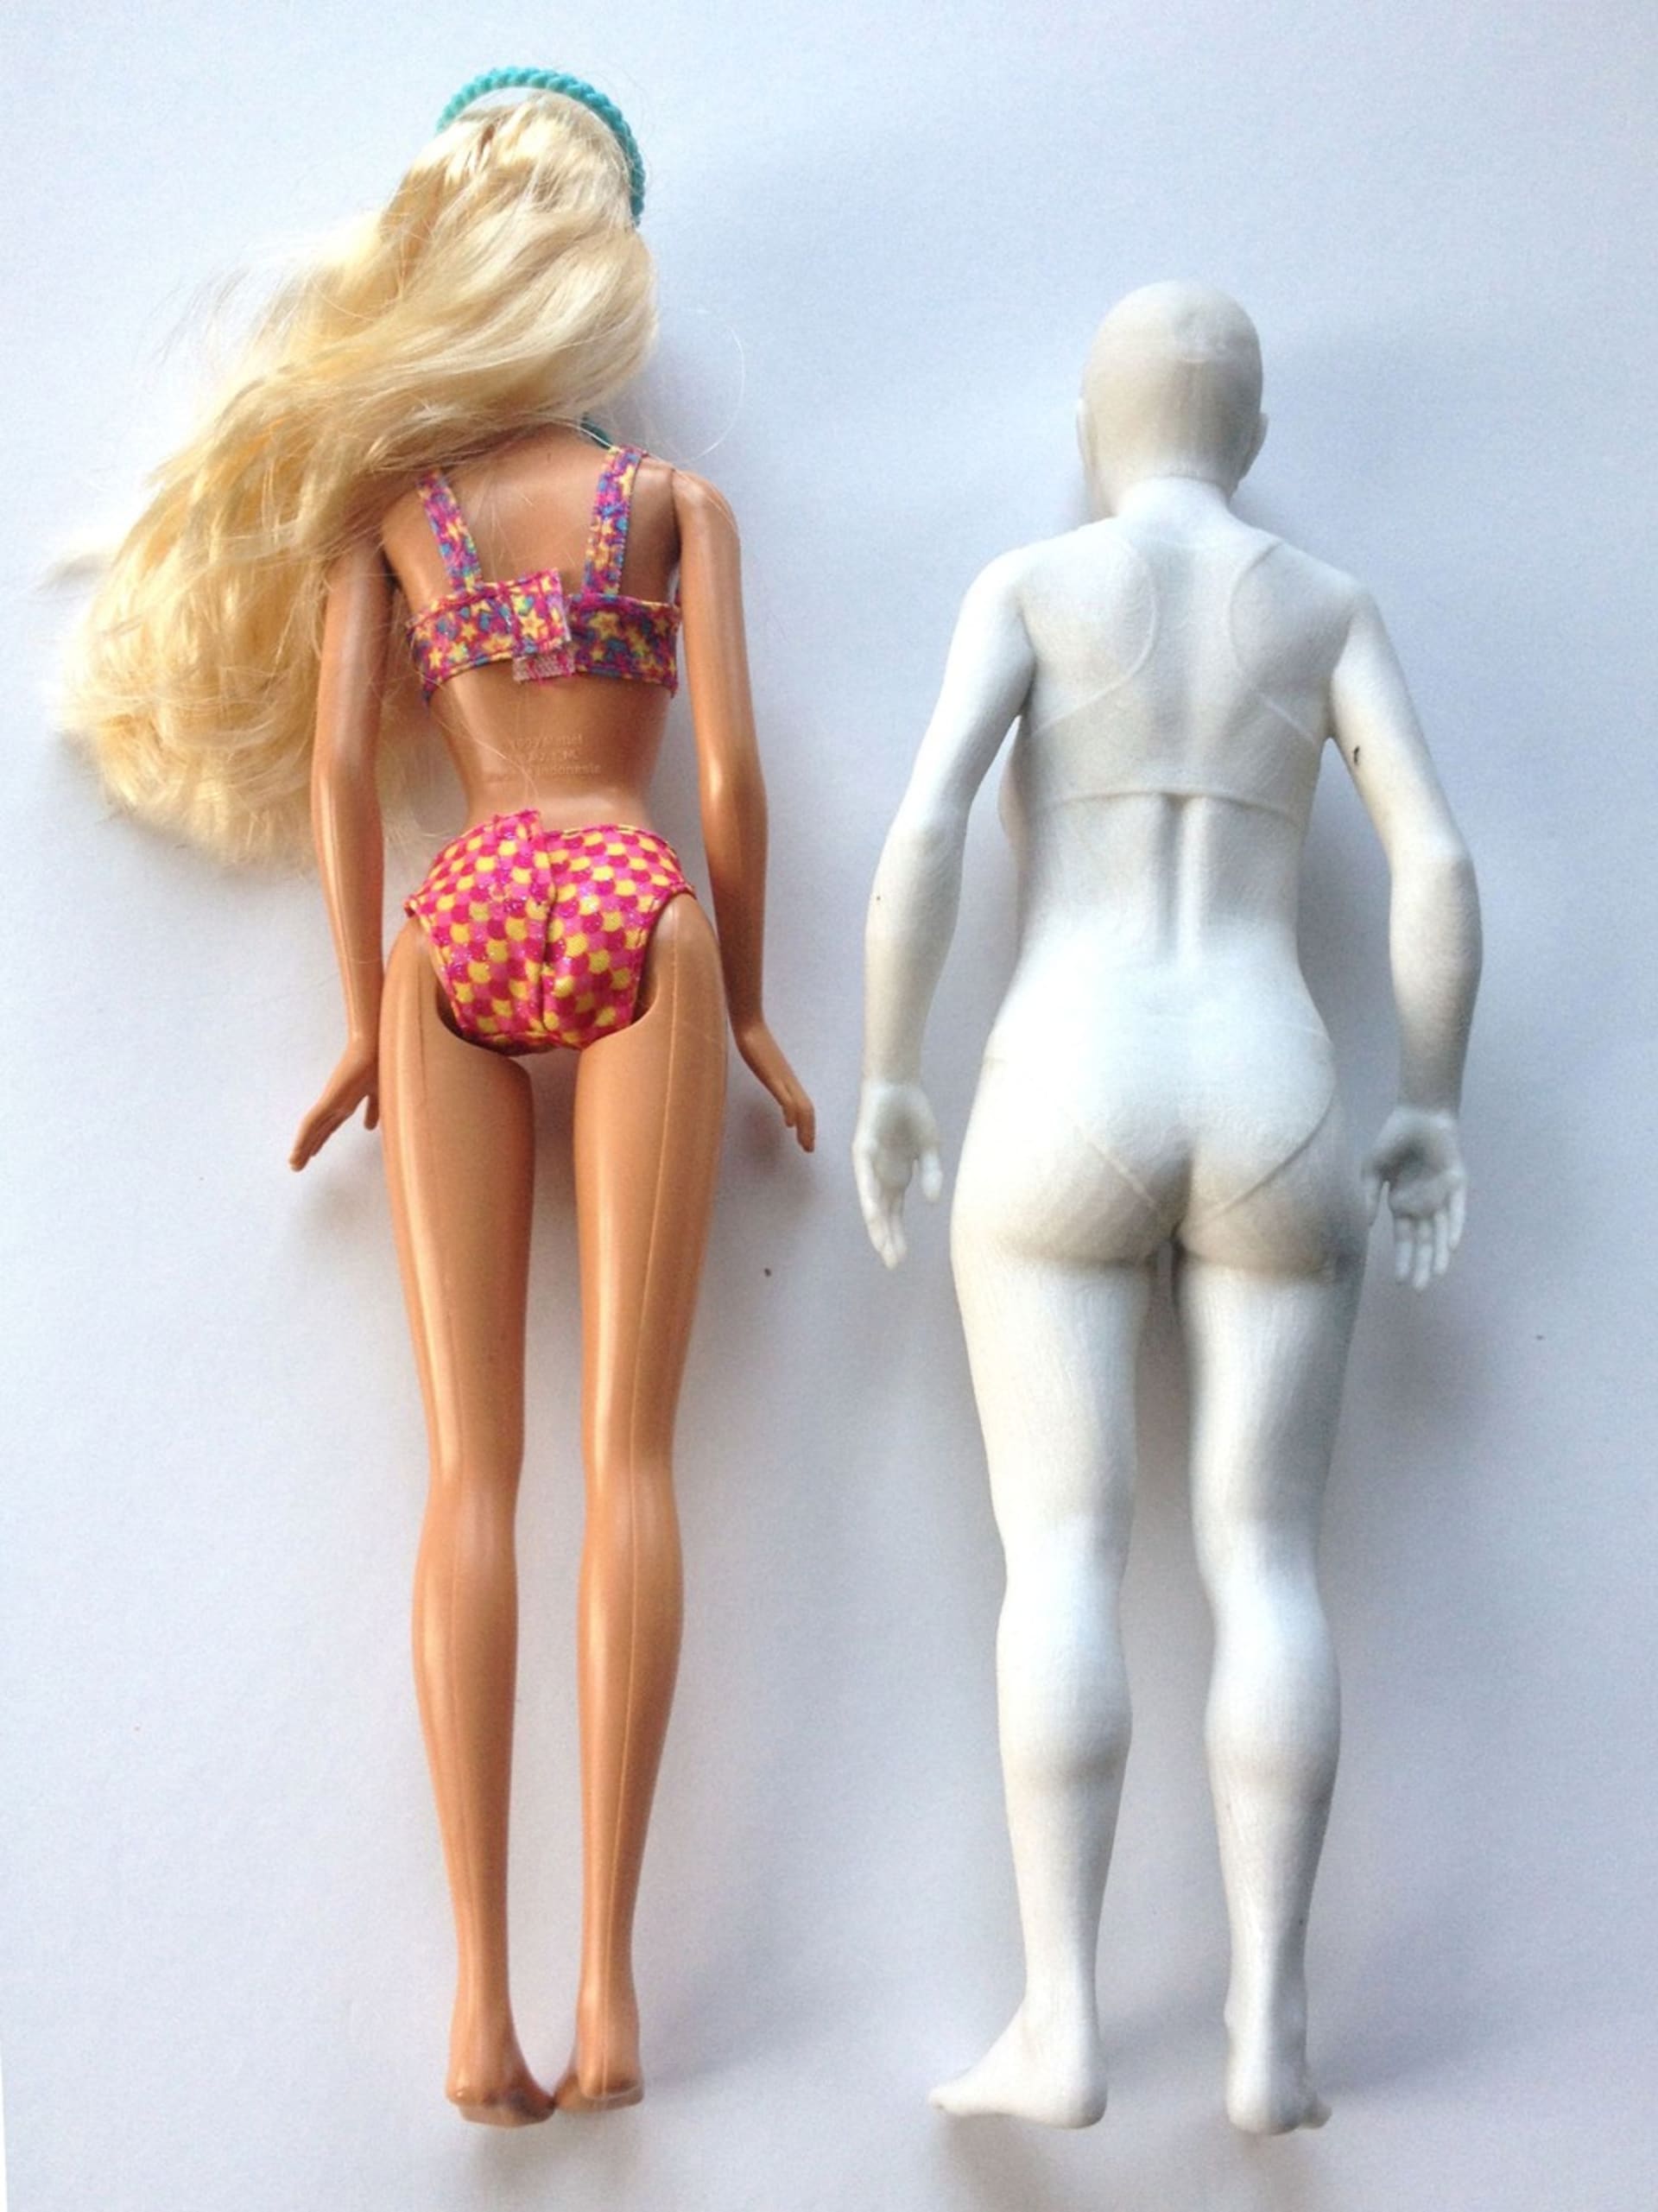 Odborníci převedli proporce slavné Barbie na reálnou ženu. Jak by vypadala?